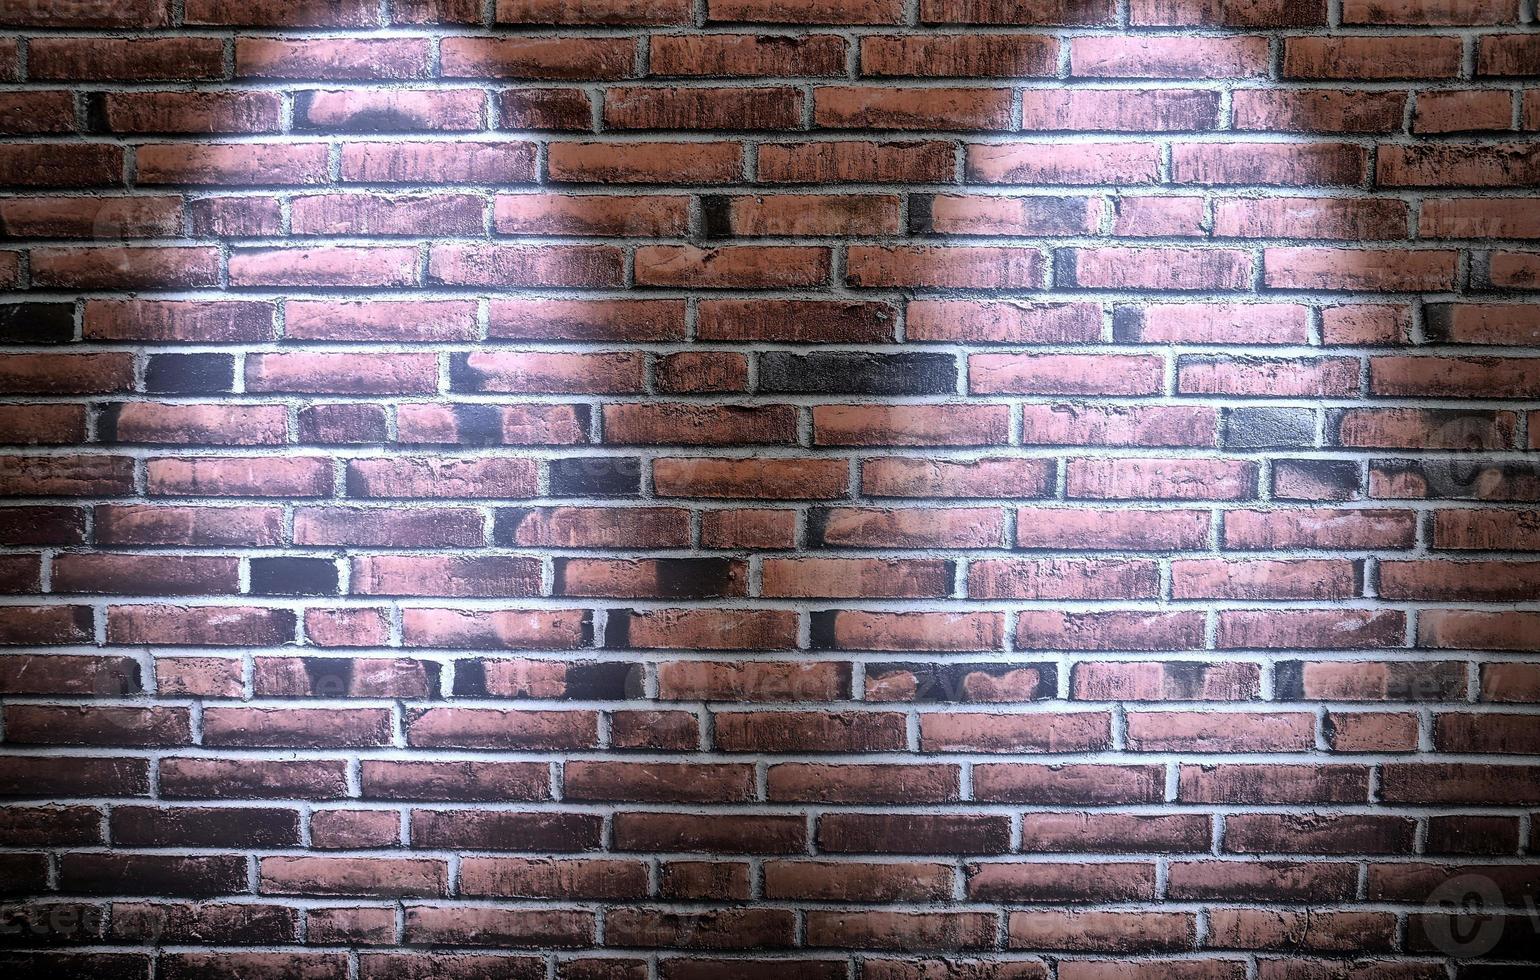 textures de mur de briques vieillies et altérées avec un éclairage par projecteur très lumineux photo